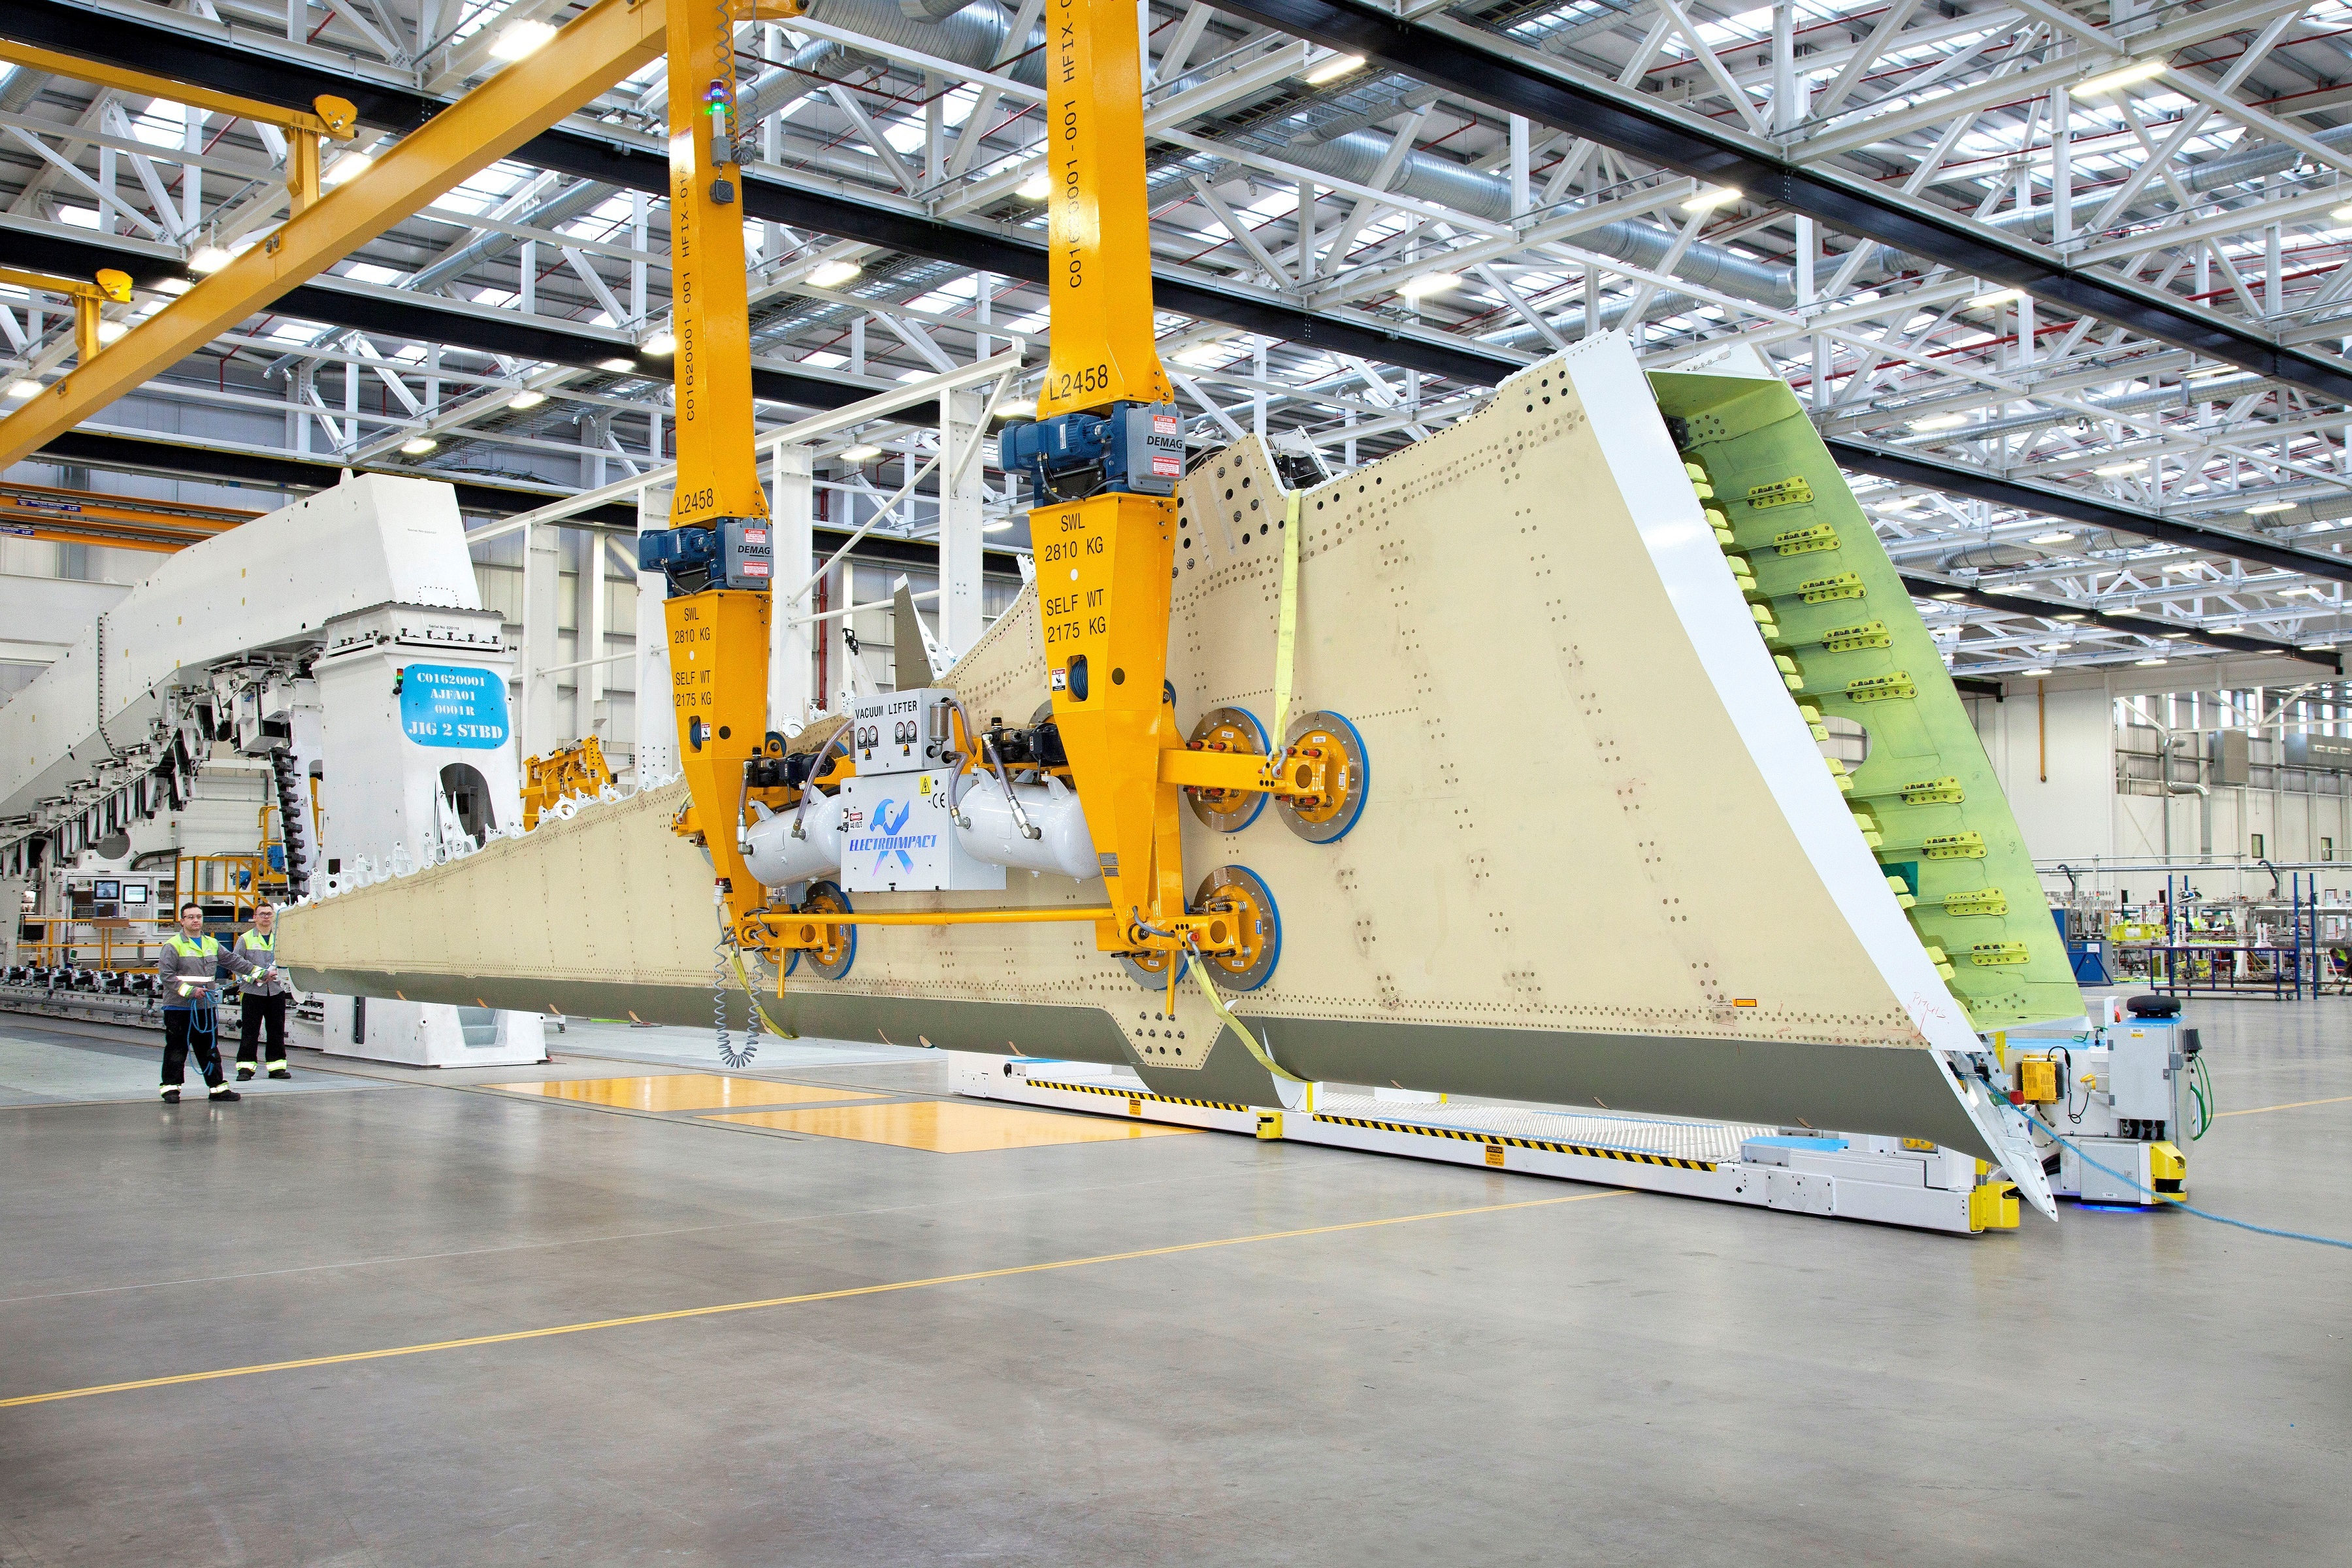 Resultado de imagen para TENAX Bombardier Aerostructures and Engineering Services